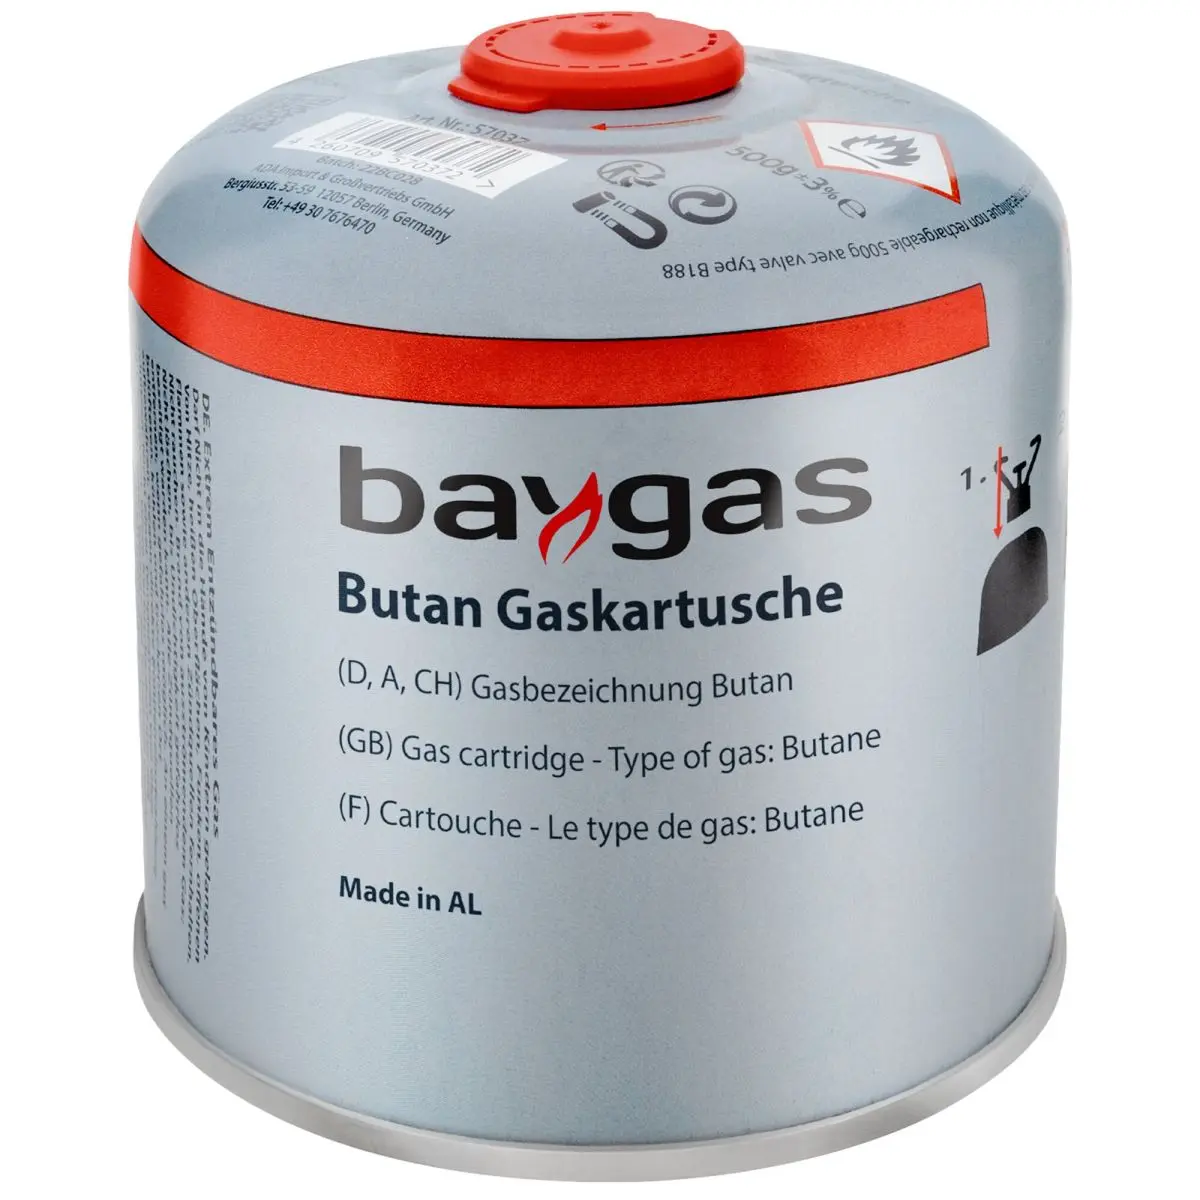 Ventilkartusche - Baygas 500g mit Schraubverschluss, Butangas